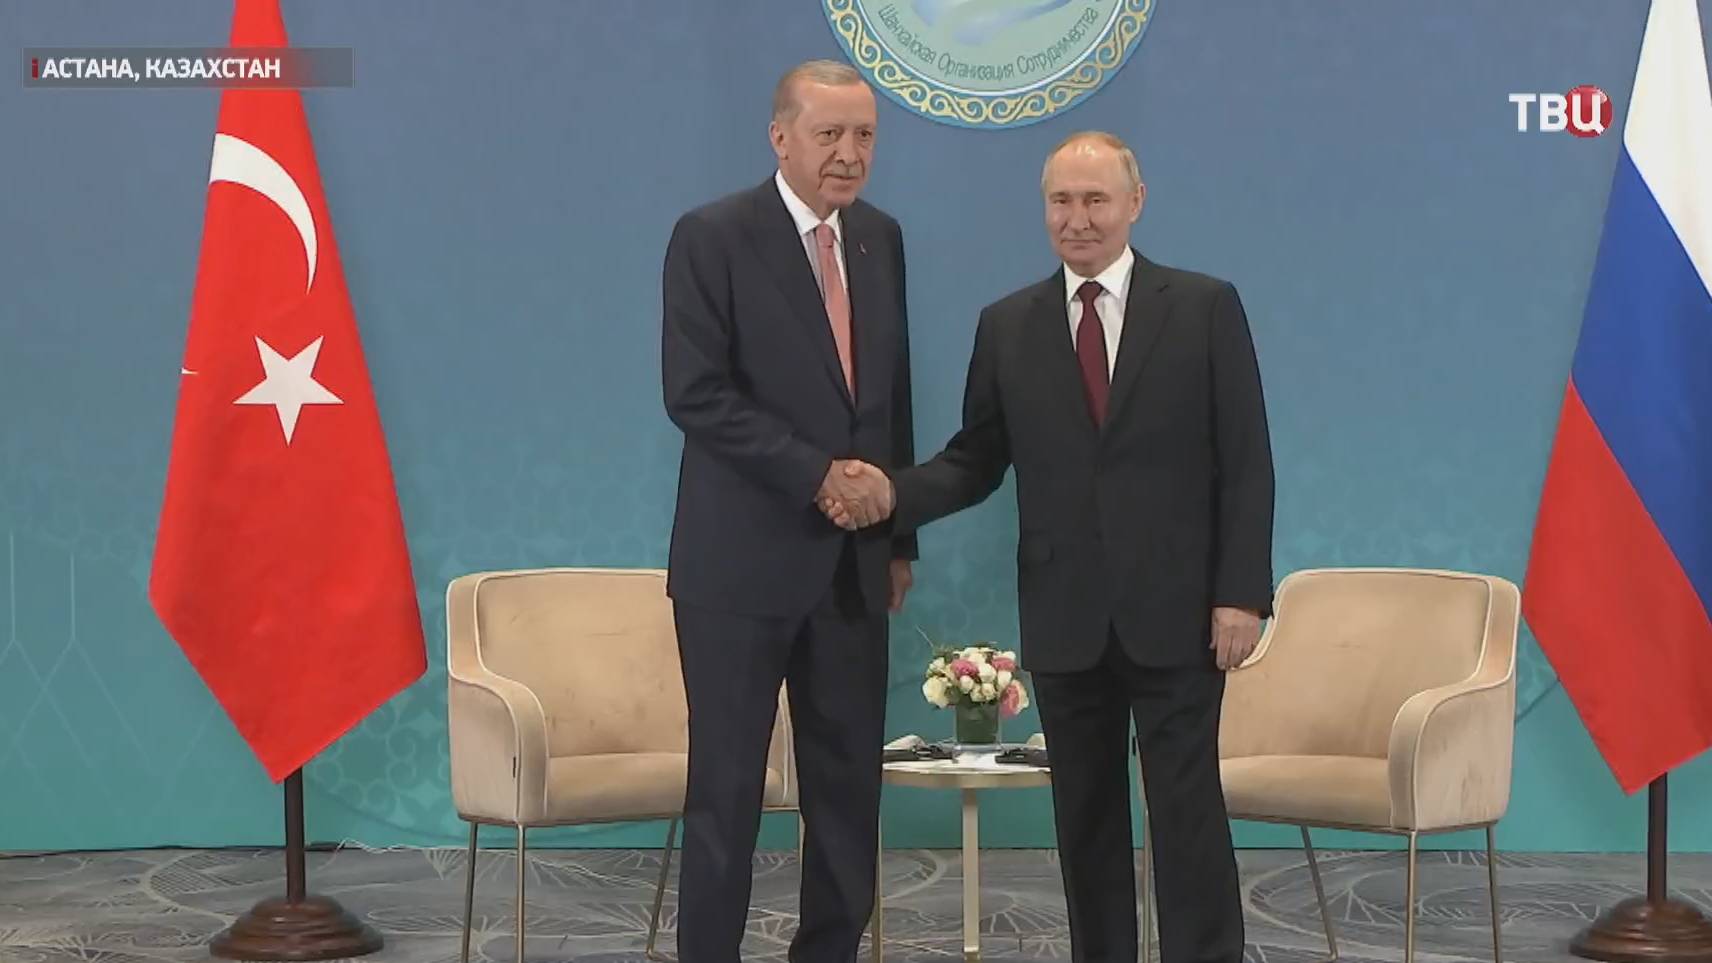 Путин принимает участие в саммите ШОС. Главное / События на ТВЦ